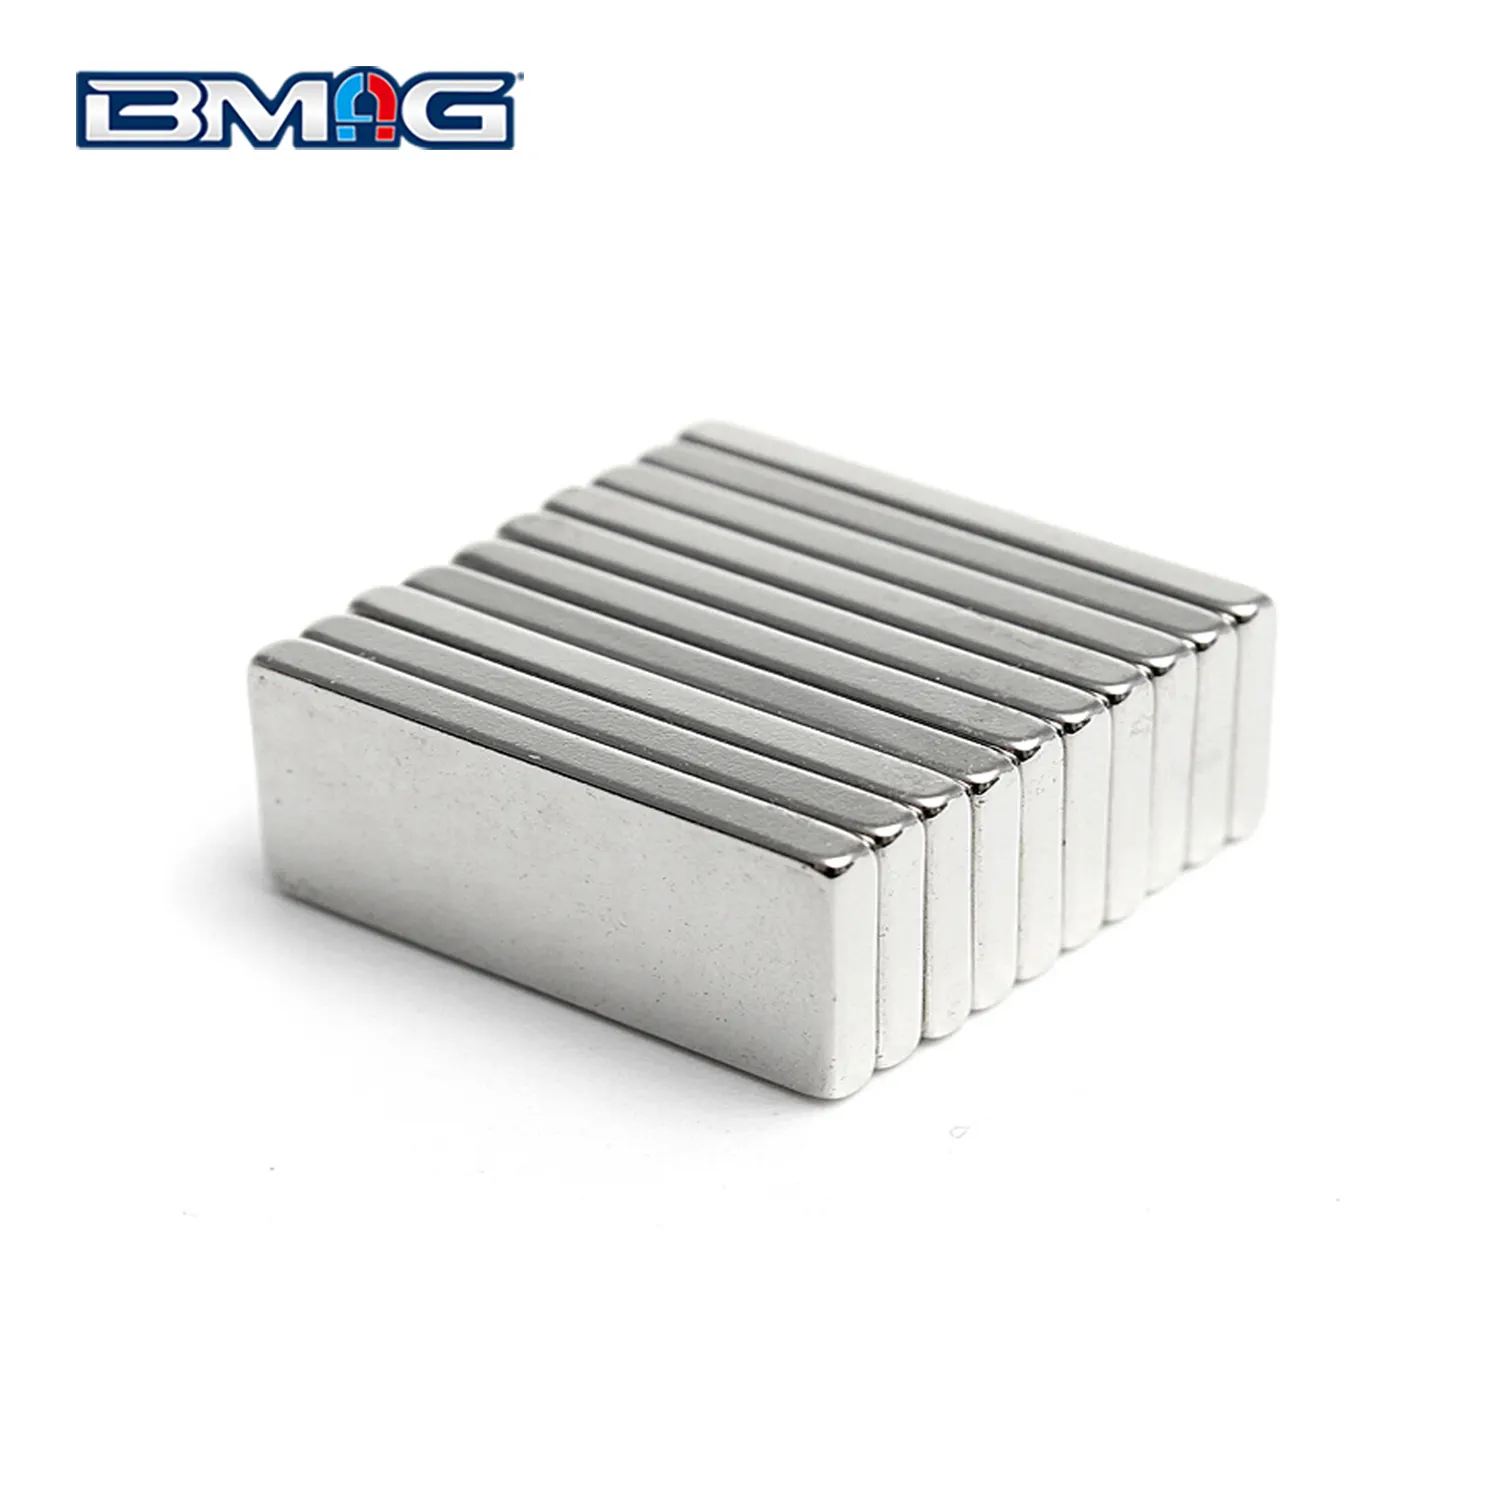 Superstar ker rechteckiger Ndfeb-Magnet block Großer Hersteller Neodym-Magnete N52 NdFeB Permanentstab-Neodym-Magnete